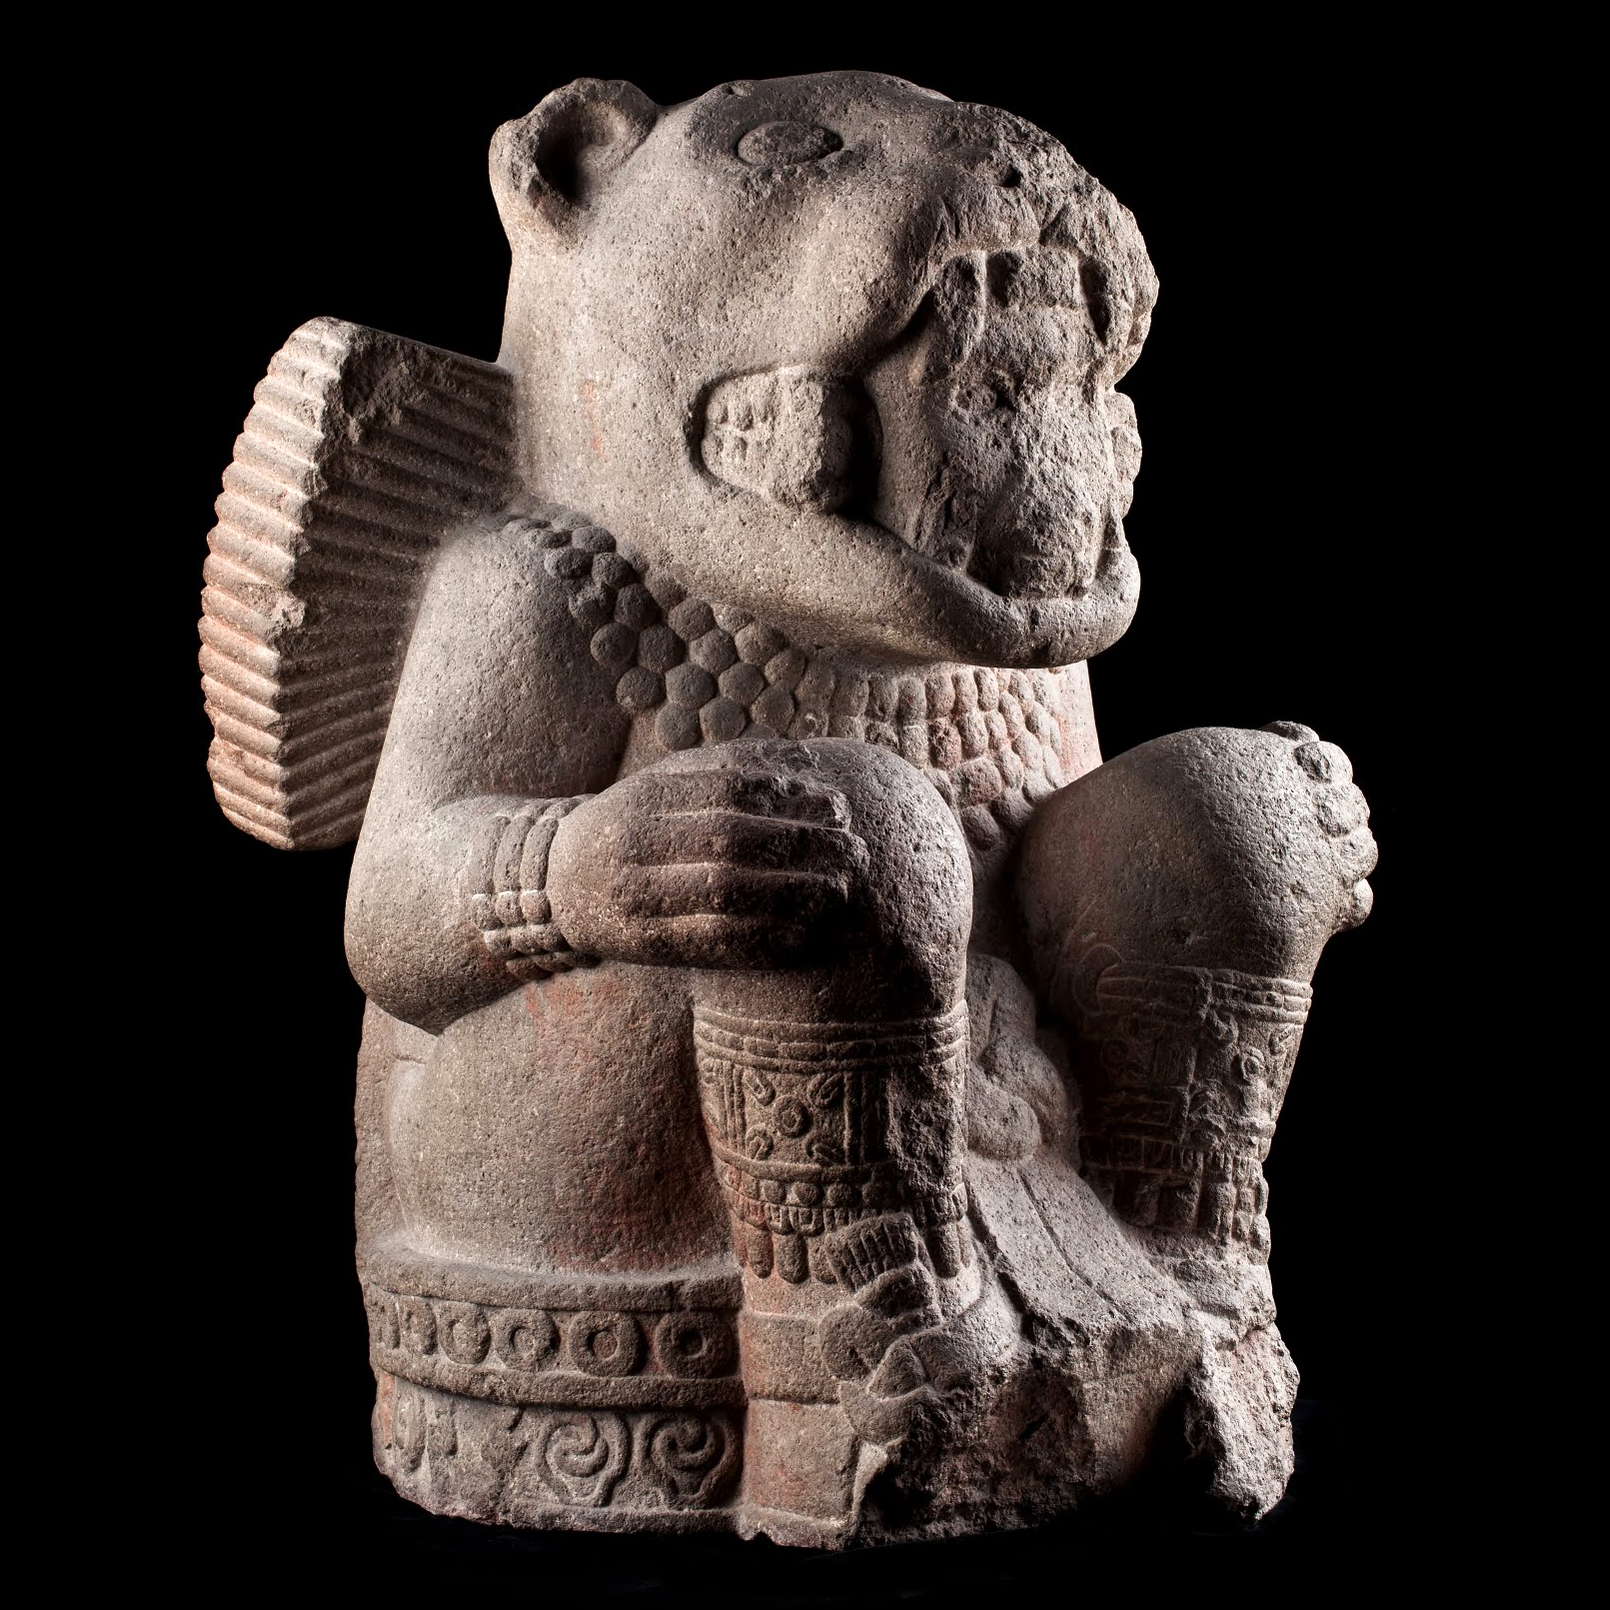 Тескатлипока (?), воин-ягуар. Мексика, 1250-1500 гг. н.э. Коллекция Museo Nacional de Antropologia, Мехико.